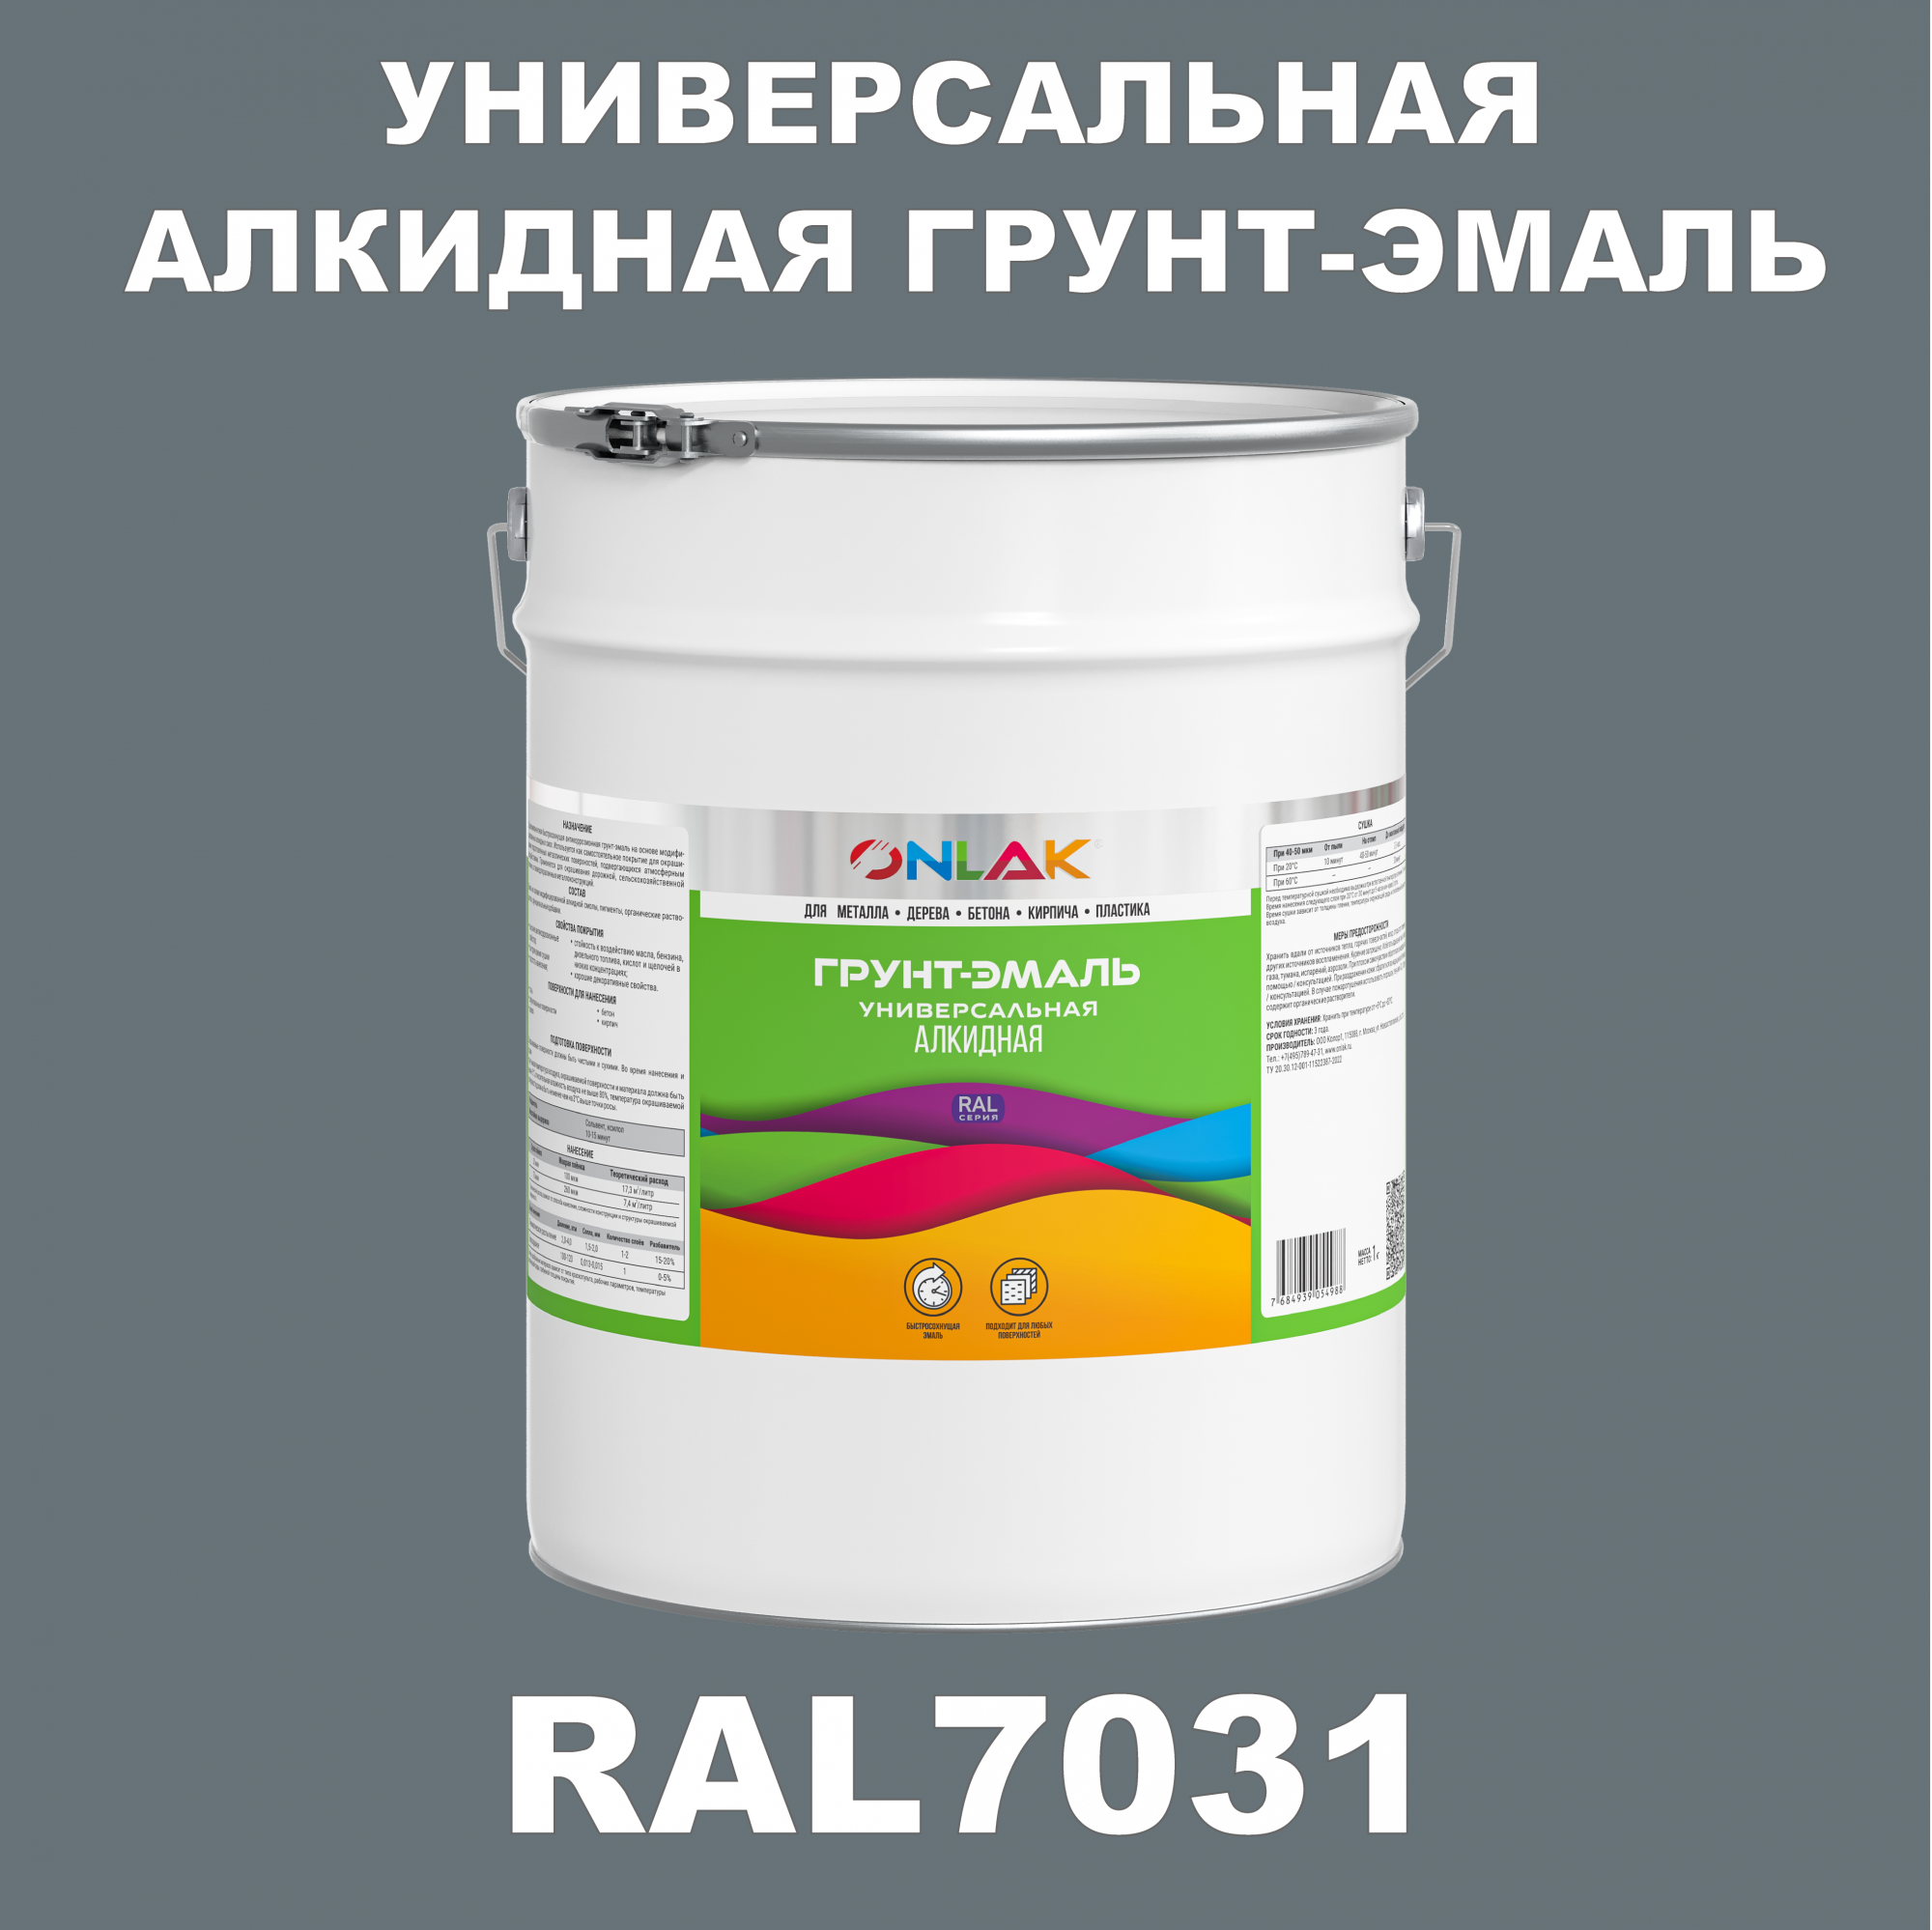 Грунт-эмаль ONLAK 1К RAL7031 антикоррозионная алкидная по металлу по ржавчине 20 кг грунт эмаль yollo по ржавчине алкидная синяя 0 9 кг